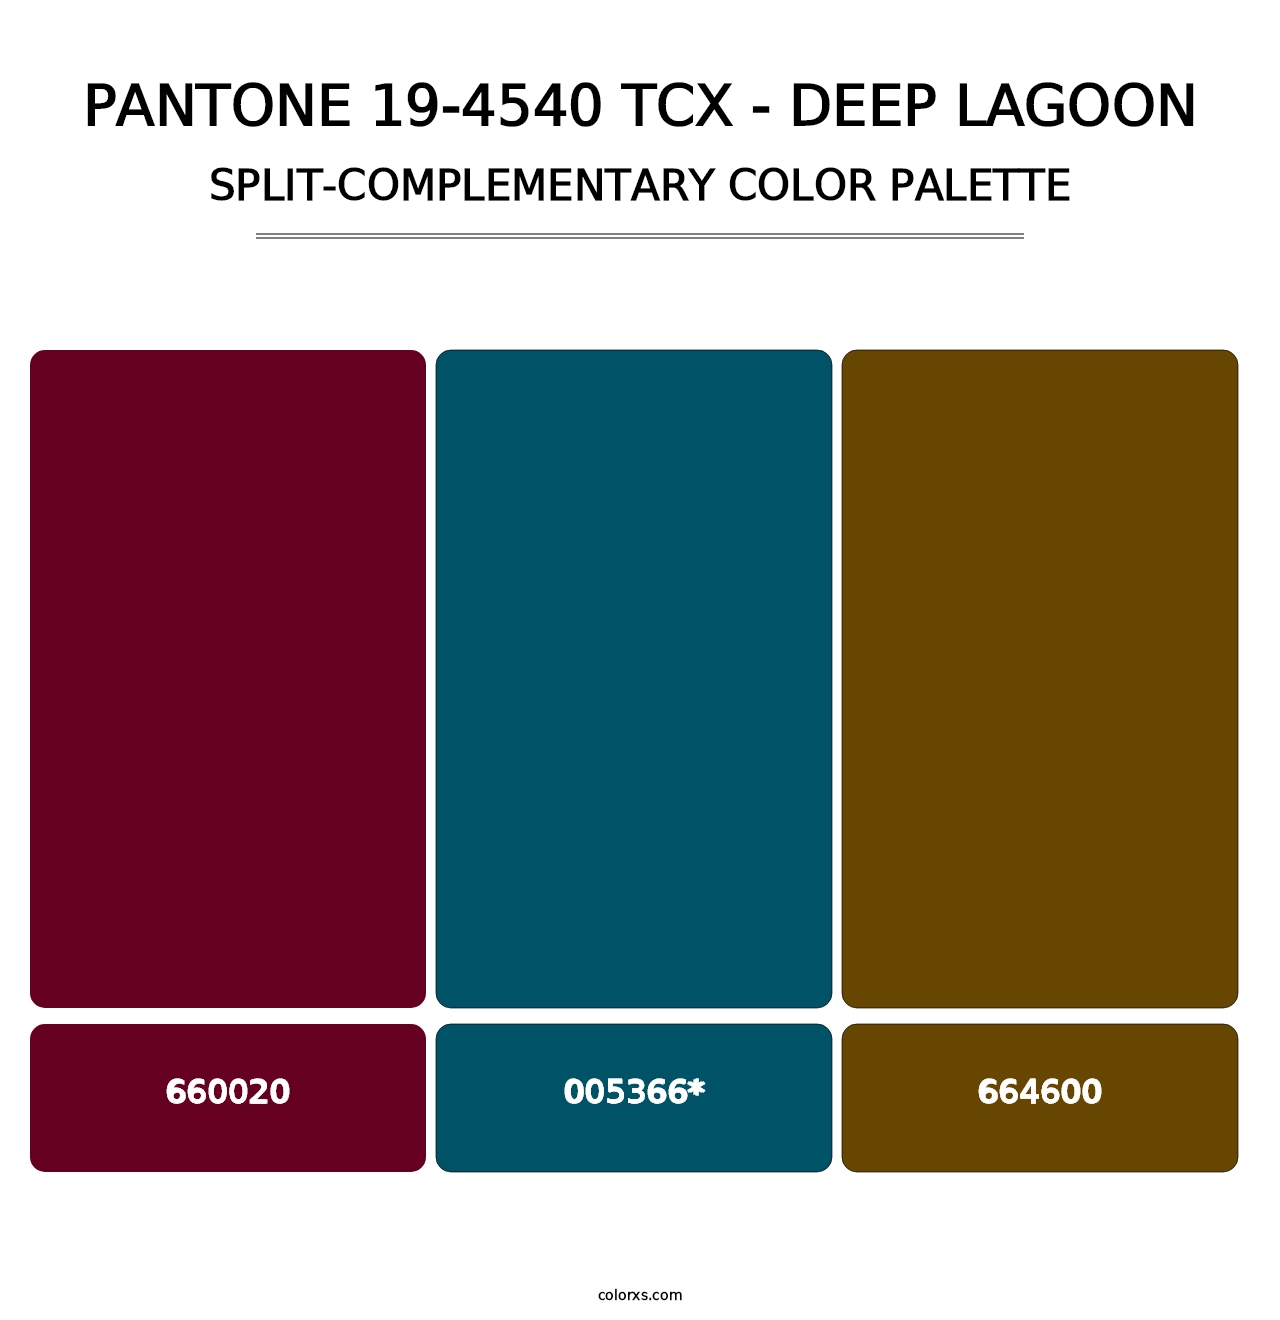 PANTONE 19-4540 TCX - Deep Lagoon - Split-Complementary Color Palette